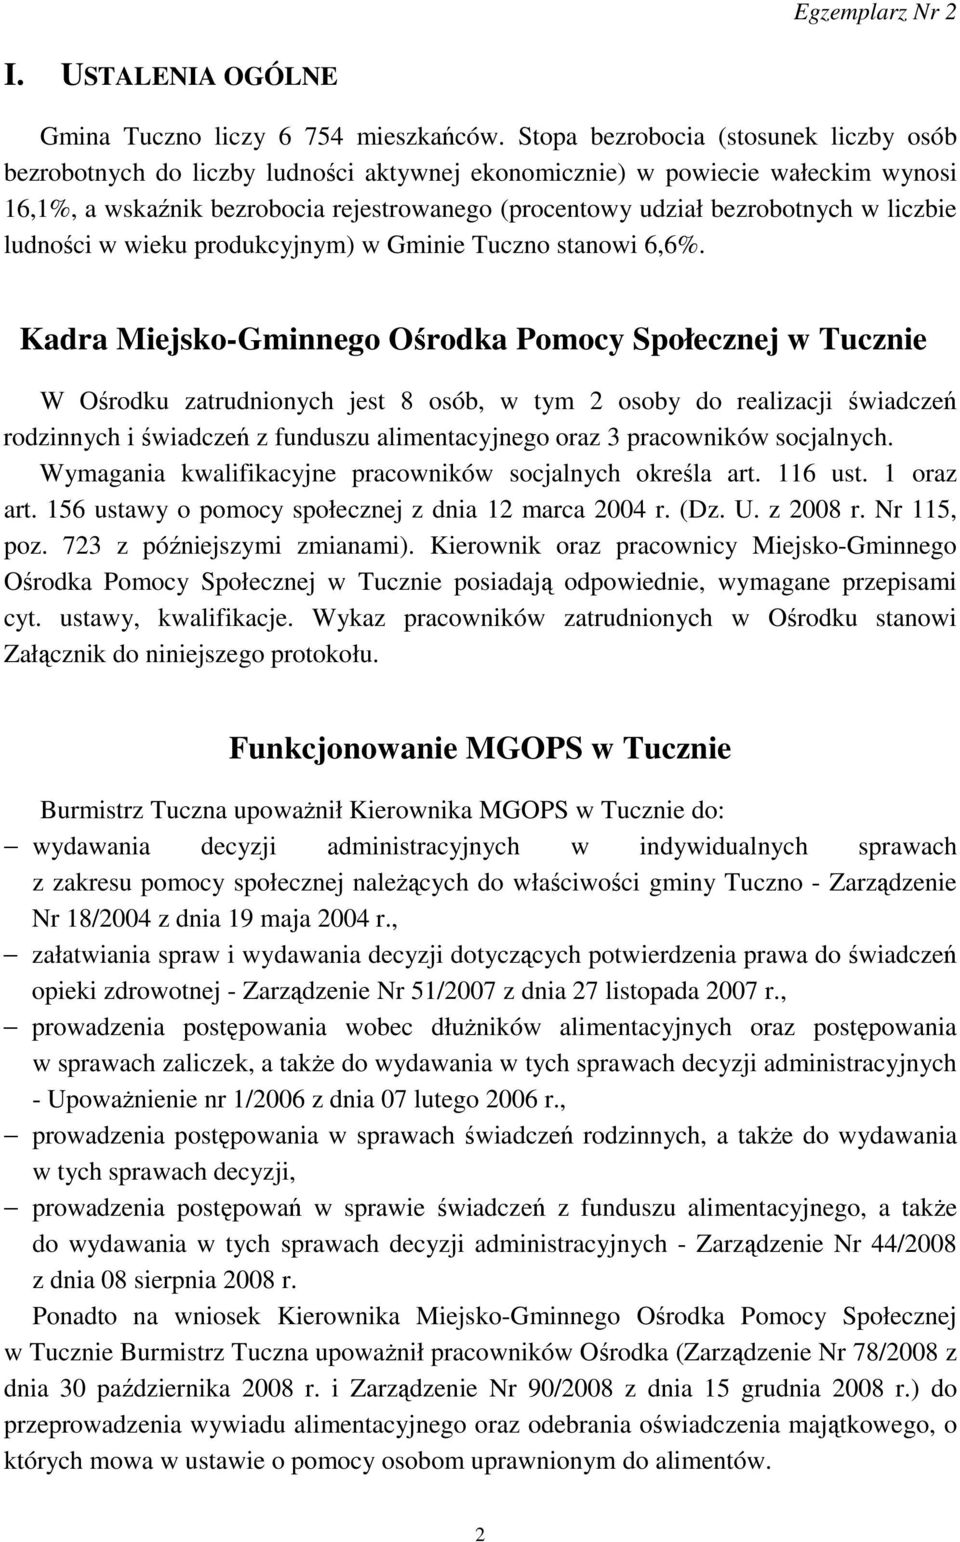 liczbie ludności w wieku produkcyjnym) w Gminie Tuczno stanowi 6,6%.